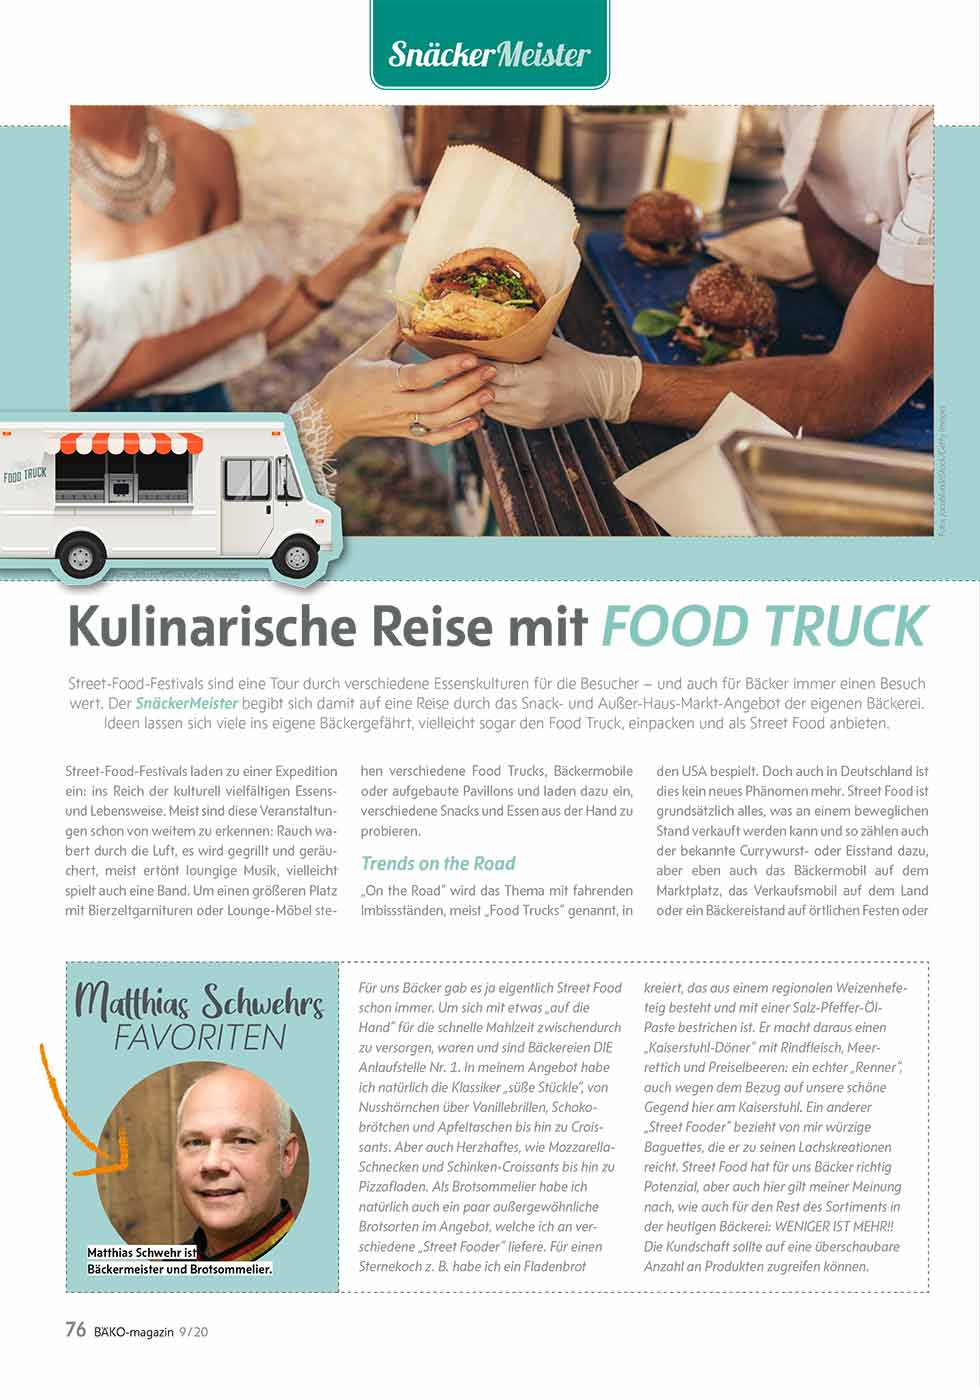 Kulinarische Reise mit Food Truck